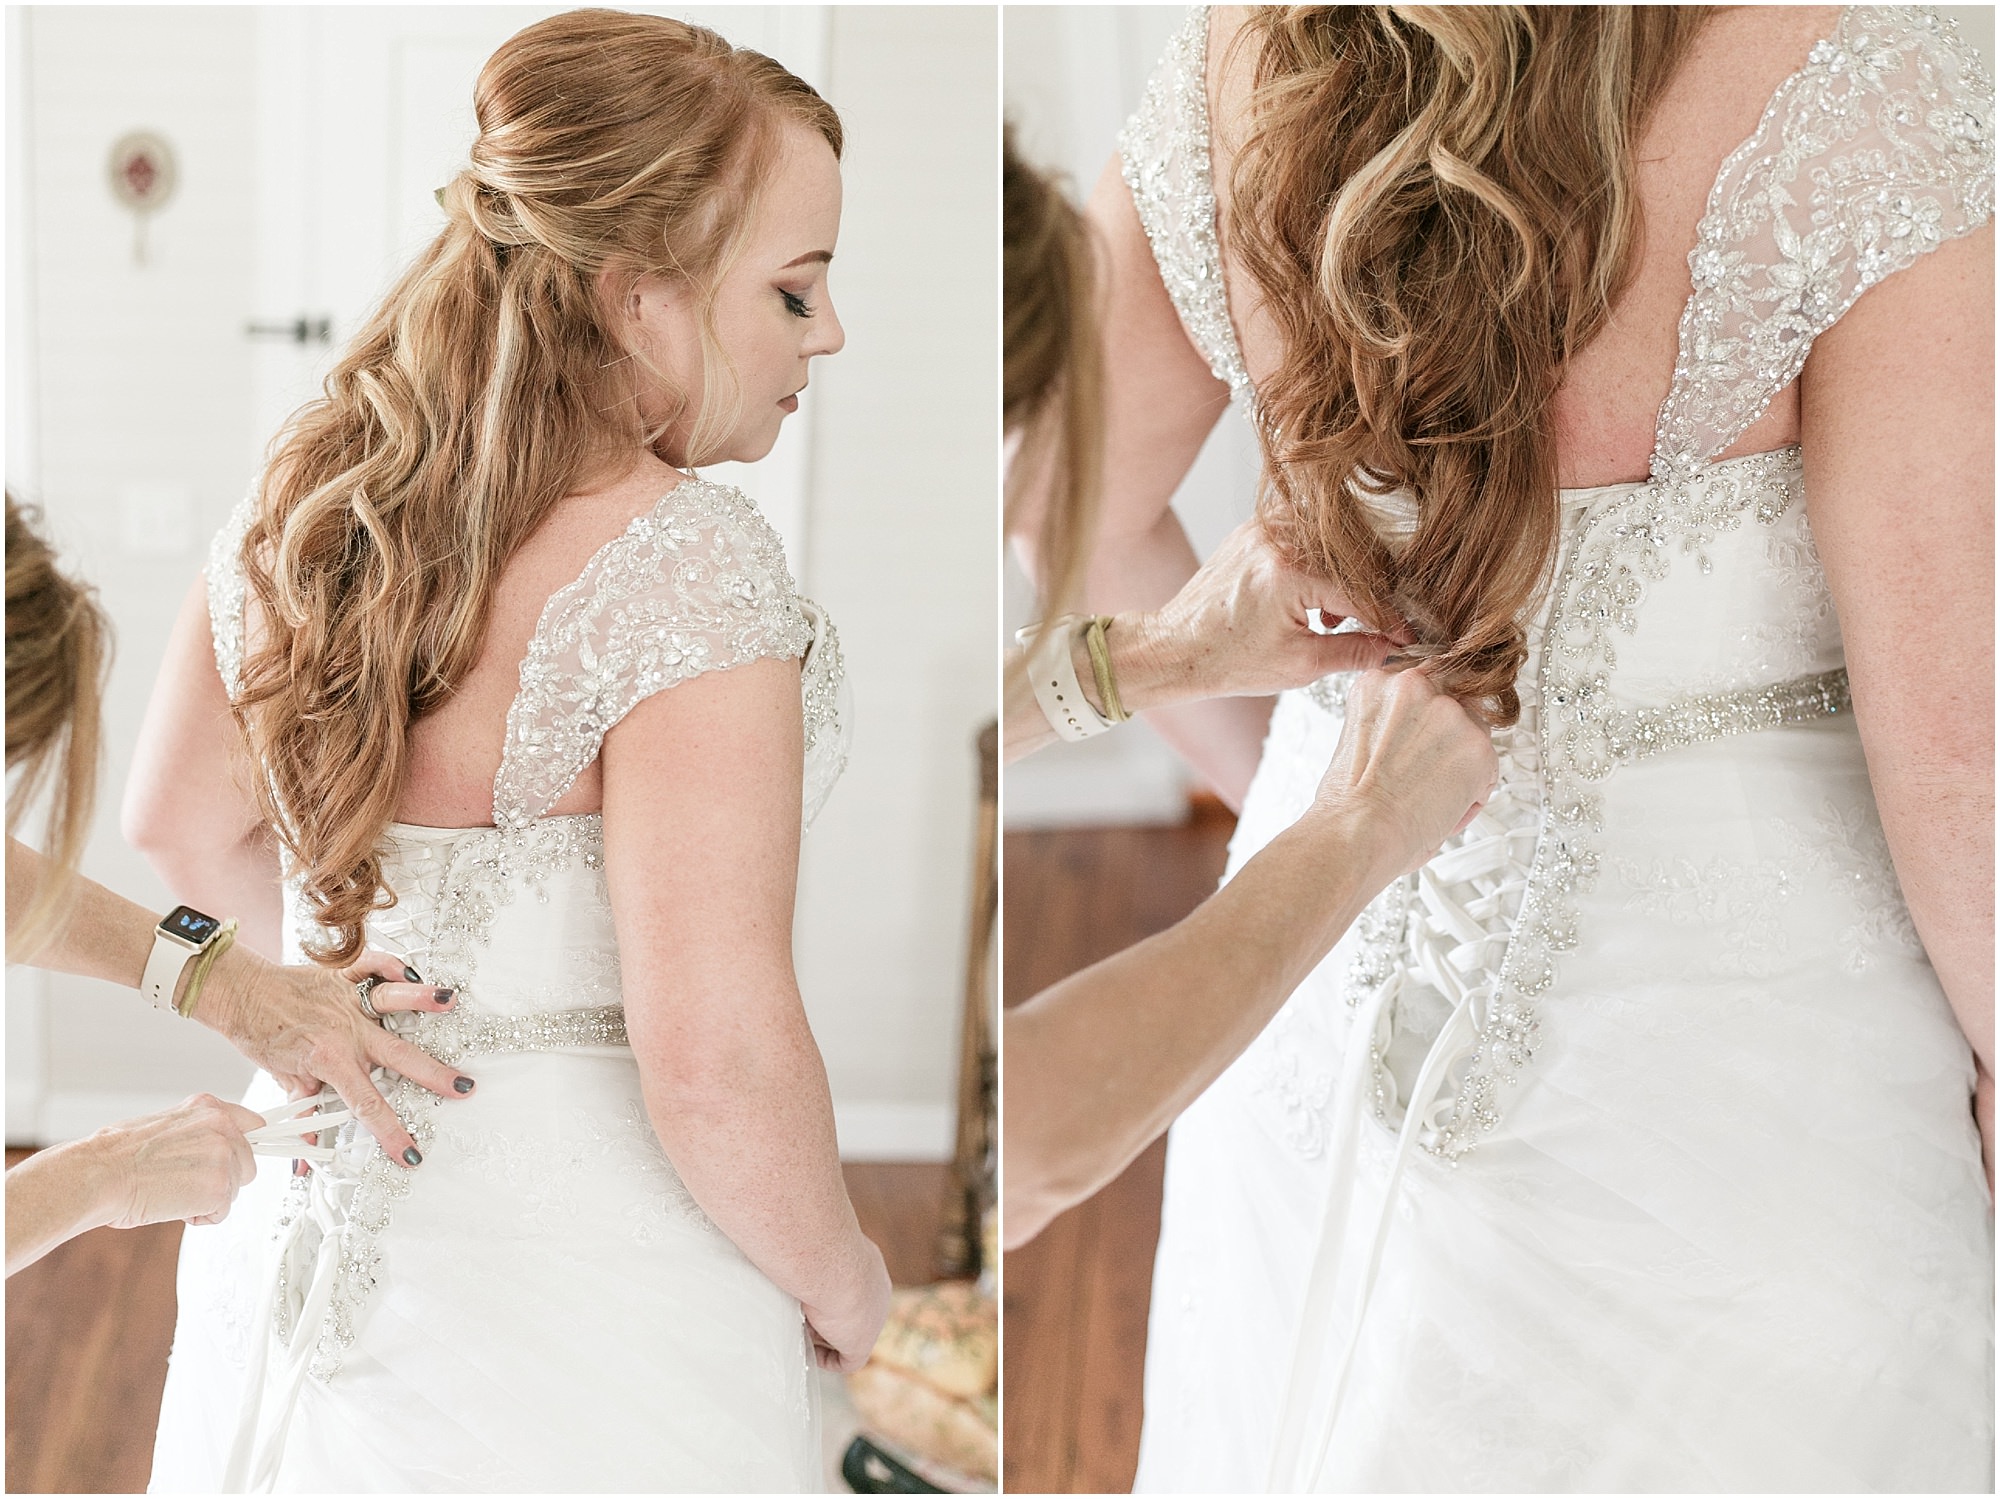 Finishing lacing up the back of brides wedding dress. 